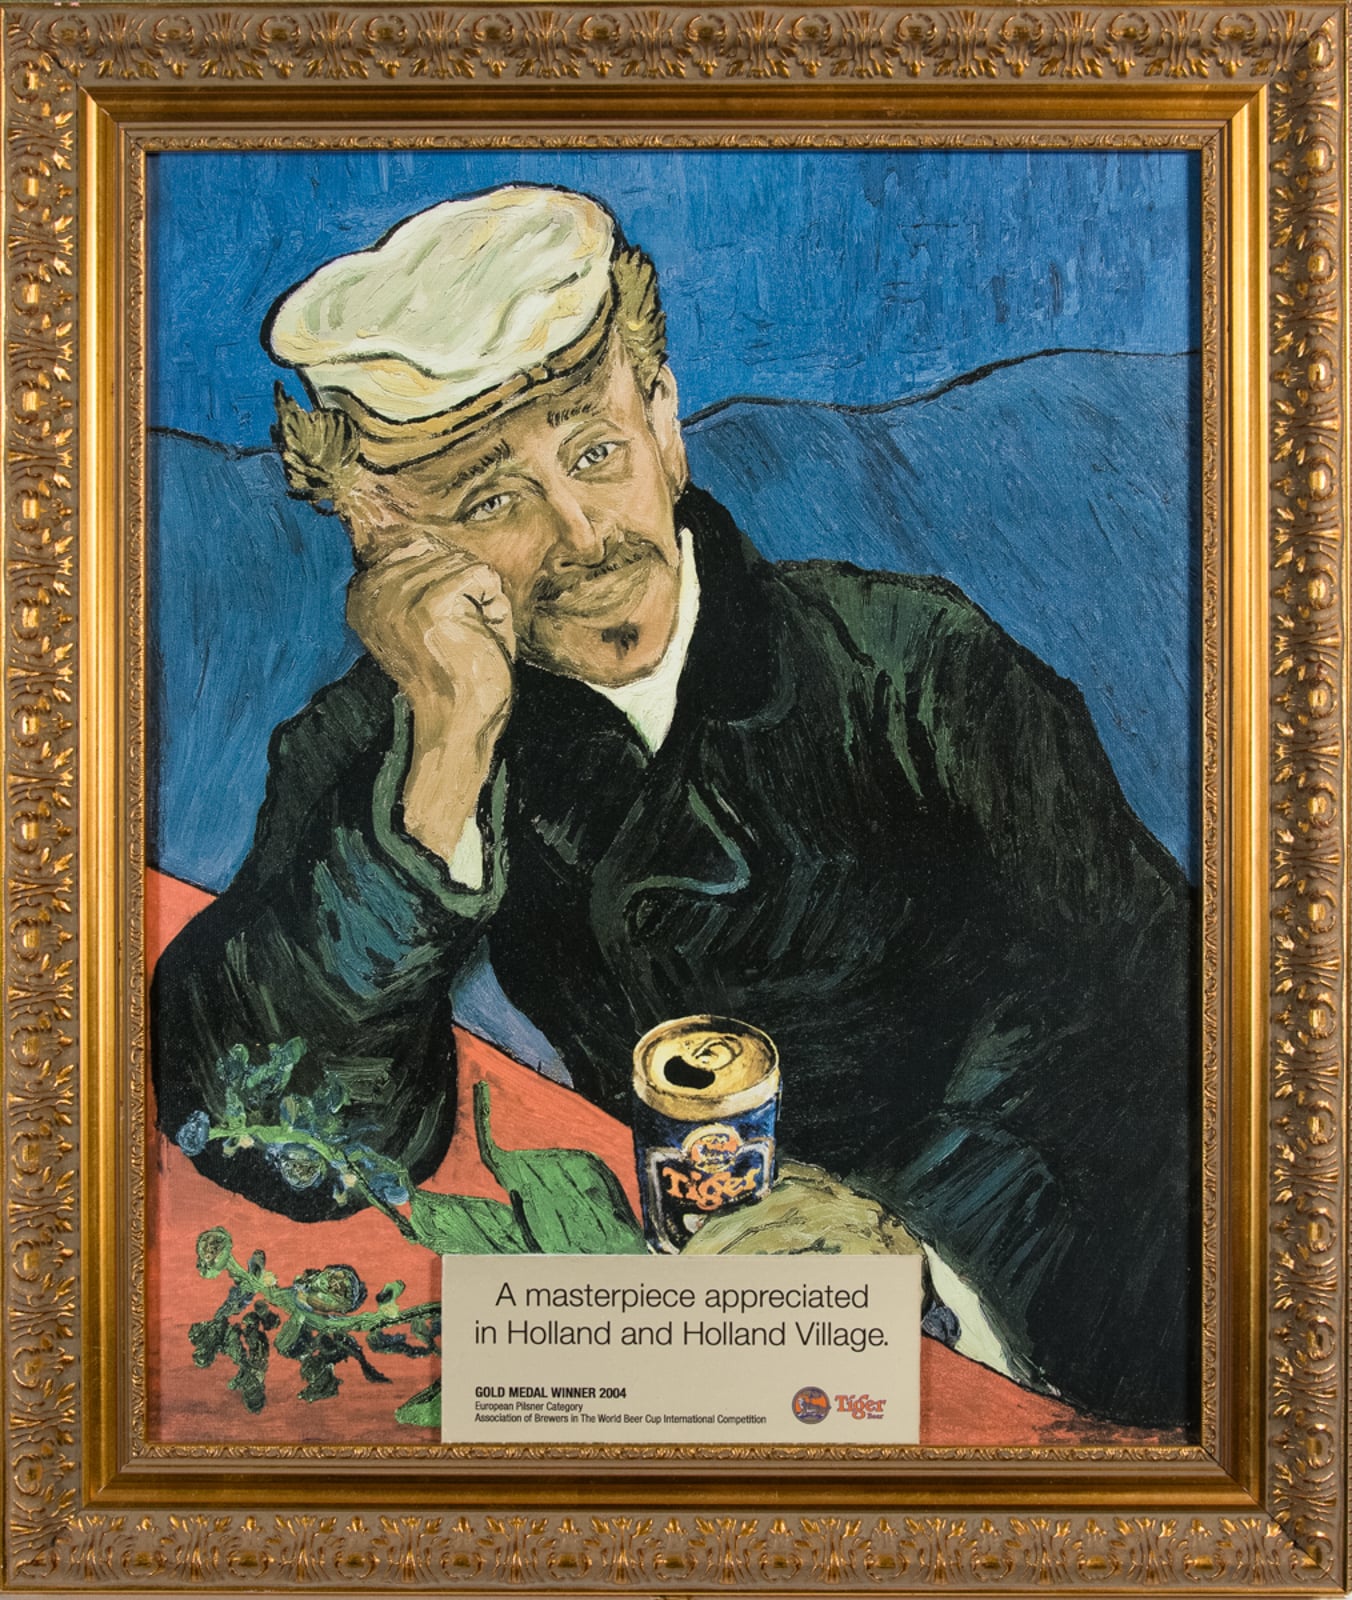 Tiger Beer in Van Gogh Style Painting (Winner 2004)